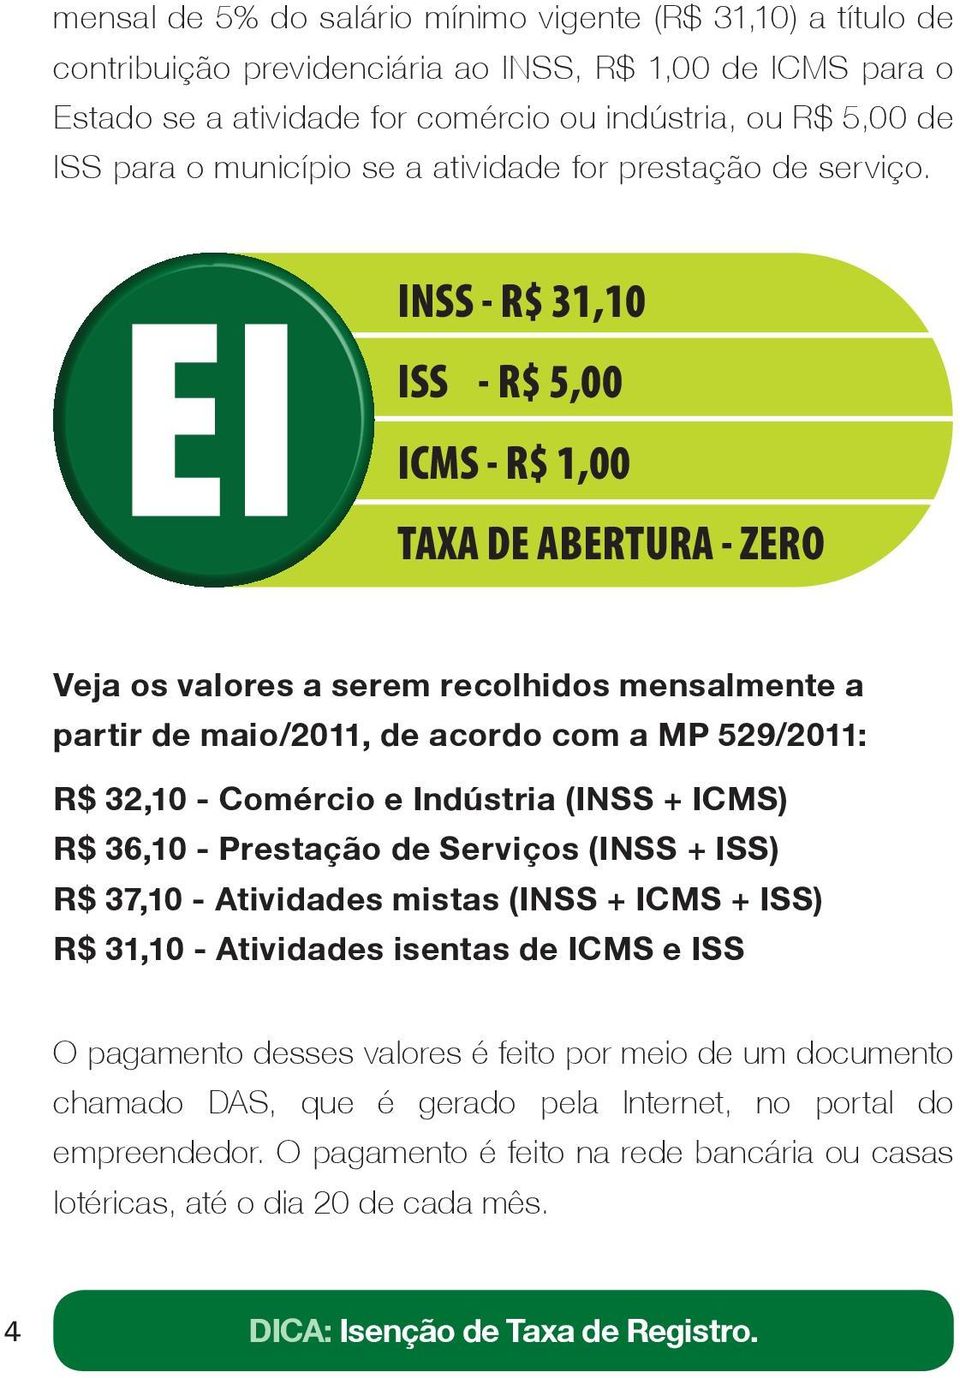 INSS - R$ 31,10 ISS - R$ 5,00 ICMS - R$ 1,00 TAXA DE ABERTURA - ZERO Veja os valores a serem recolhidos mensalmente a partir de maio/2011, de acordo com a MP 529/2011: R$ 32,10 - Comércio e Indústria